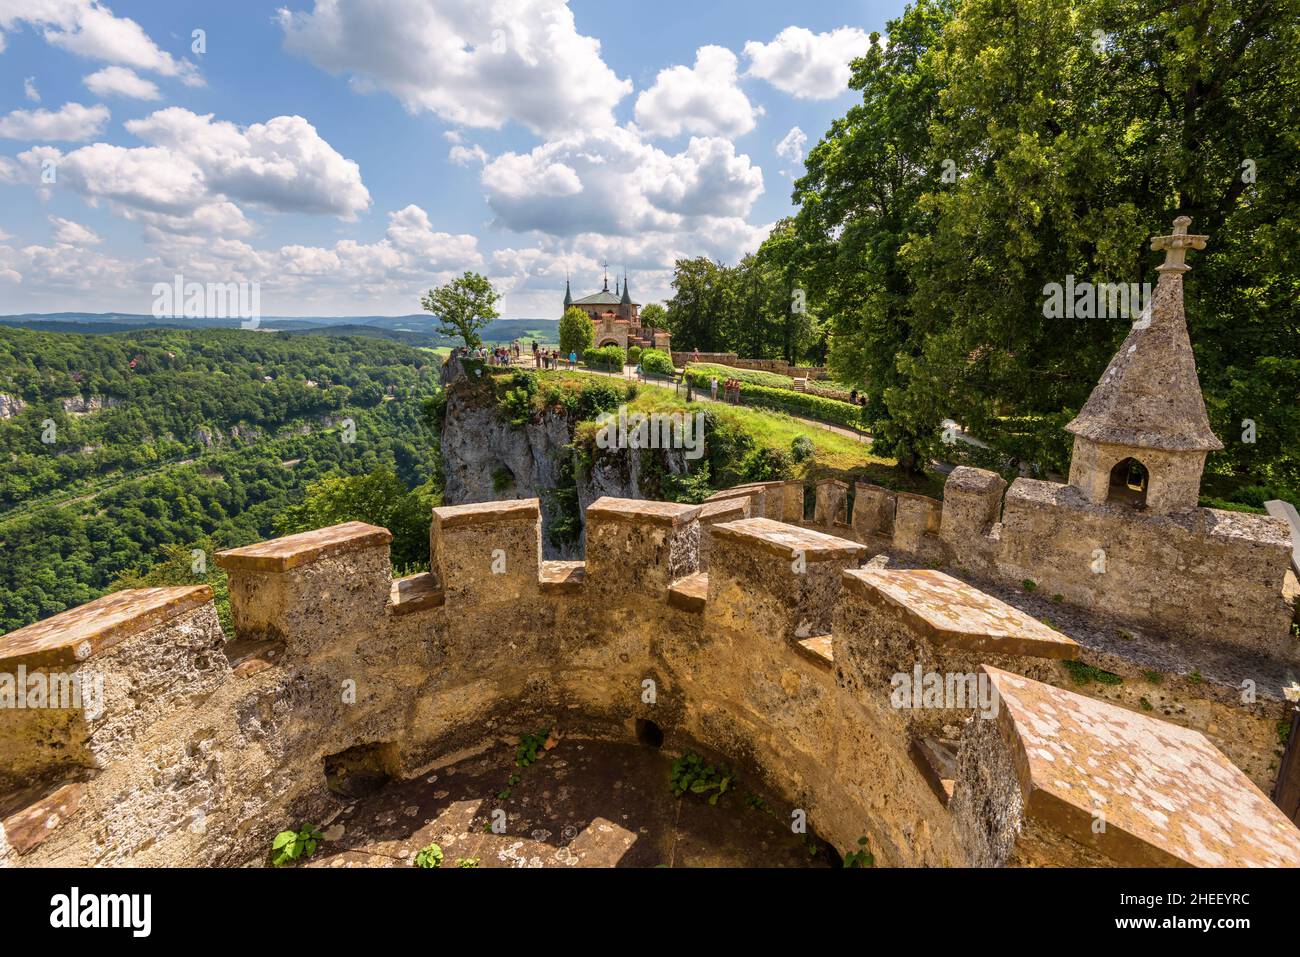 Vista dal castello di Lichtenstein, Germania, Europa. Questo castello sulla cima della montagna è un punto di riferimento di Baden-Wurttemberg. Merlature in pietra della torre fortezza ov Foto Stock